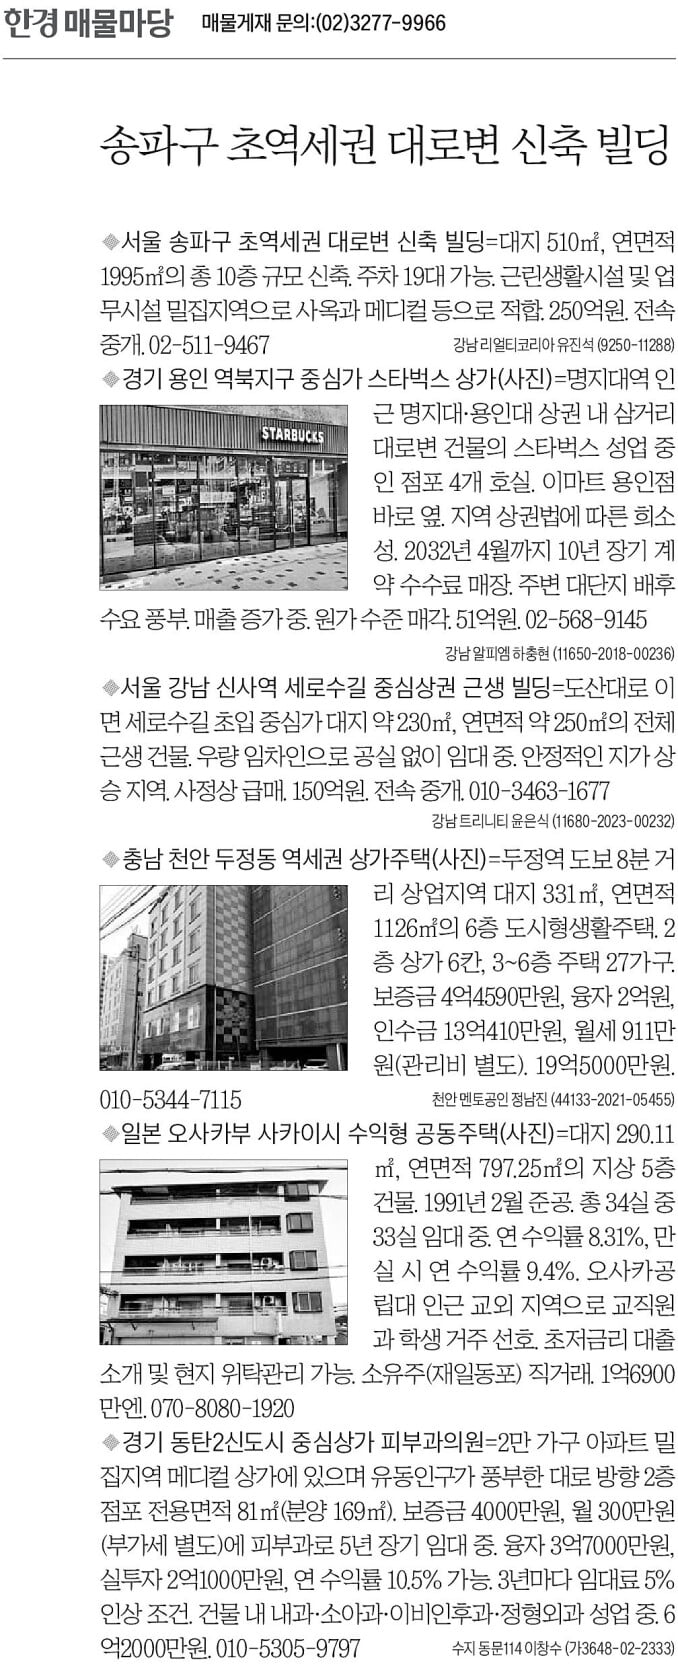 [한경 매물마당] 송파구 초역세권 대로변 신축 빌딩 등 6건